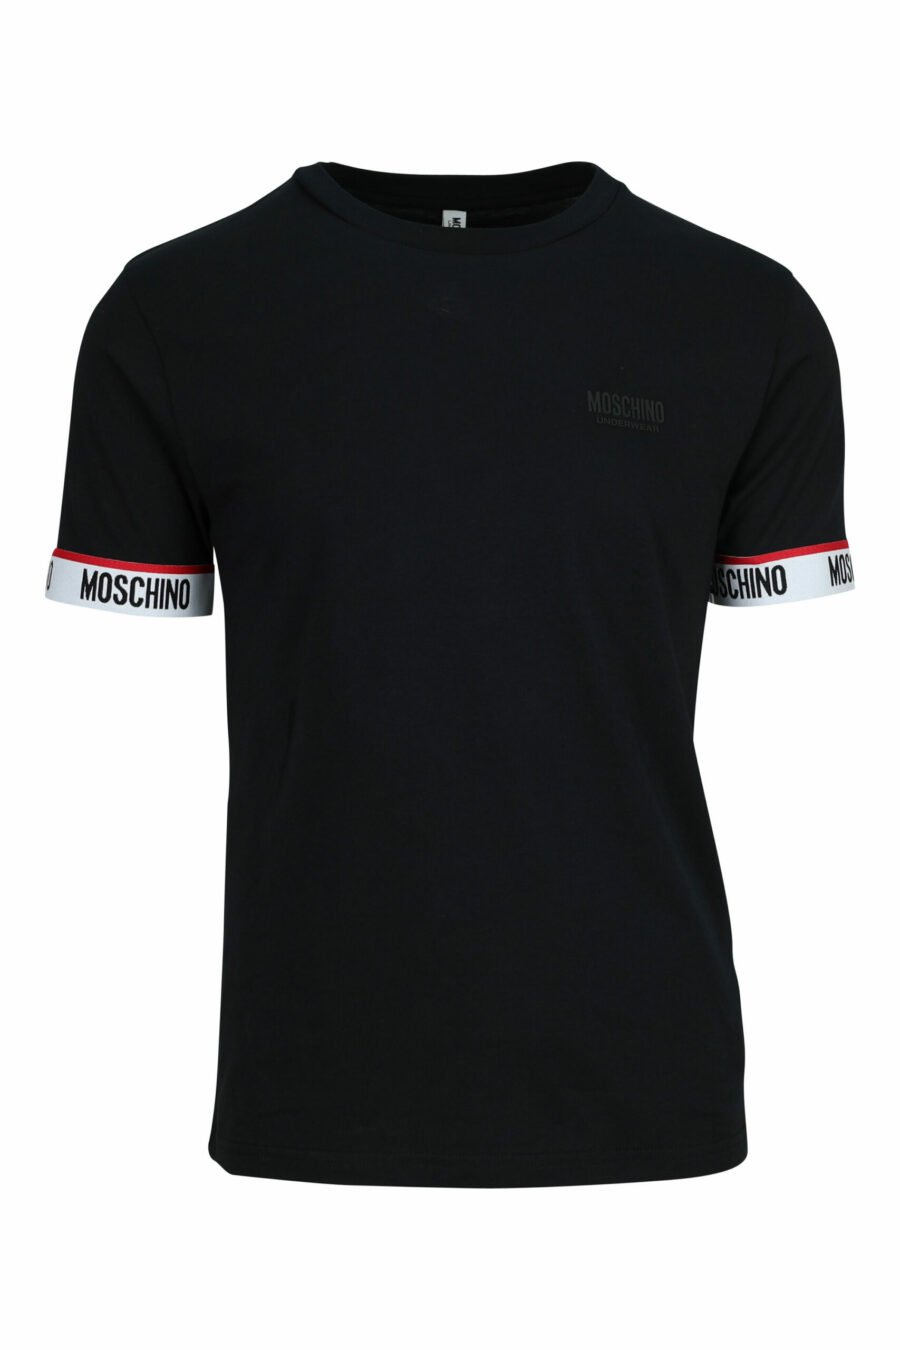 Schwarzes T-Shirt mit weißem Logo am Ärmel - 667113604855 skaliert